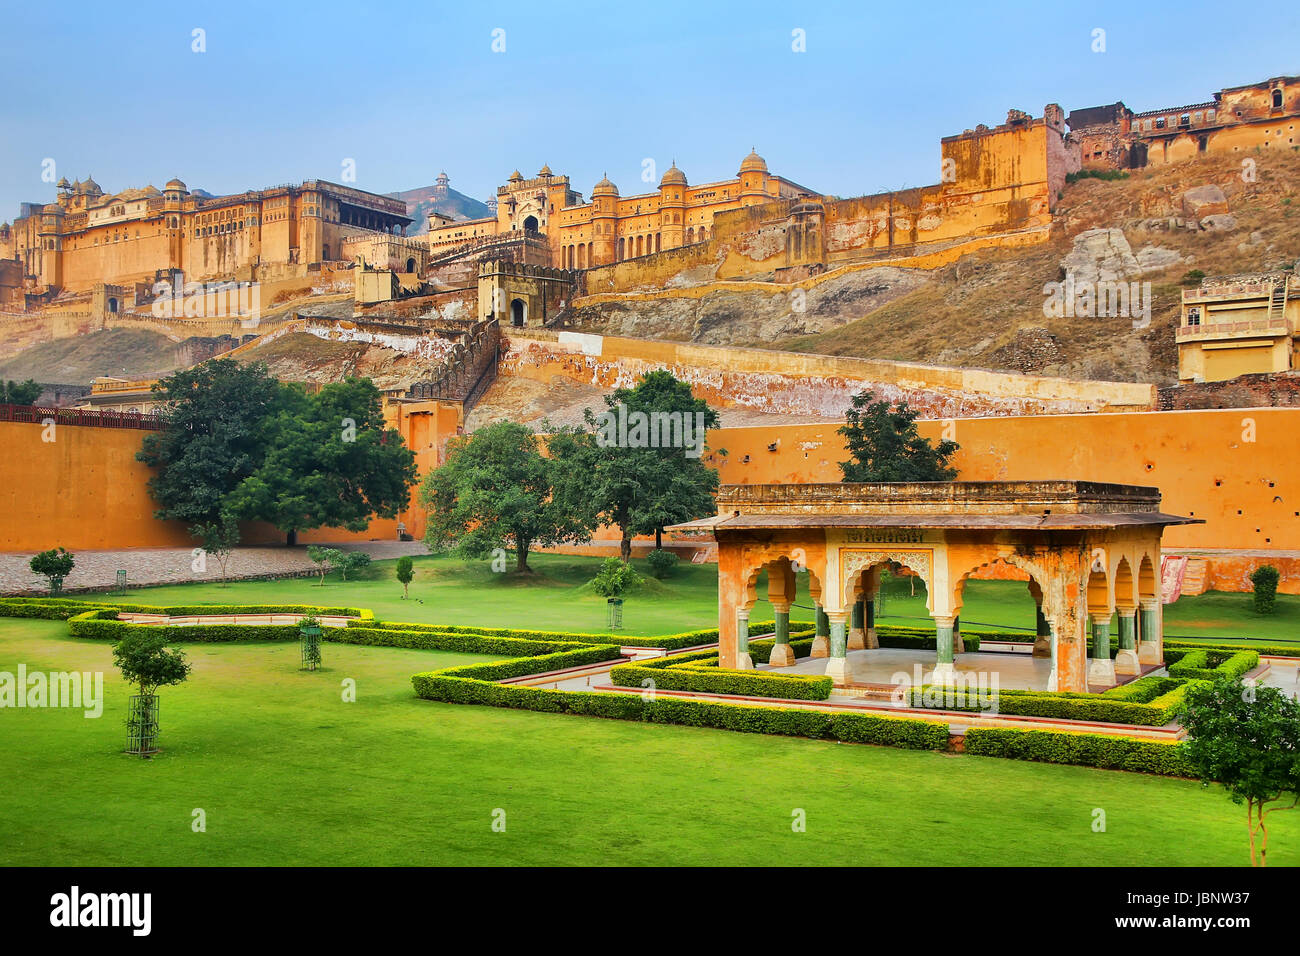 Forte Amber vicino a Jaipur nel Rajasthan, India. Forte Amber è la principale attrazione turistica nella zona di Jaipur. Foto Stock